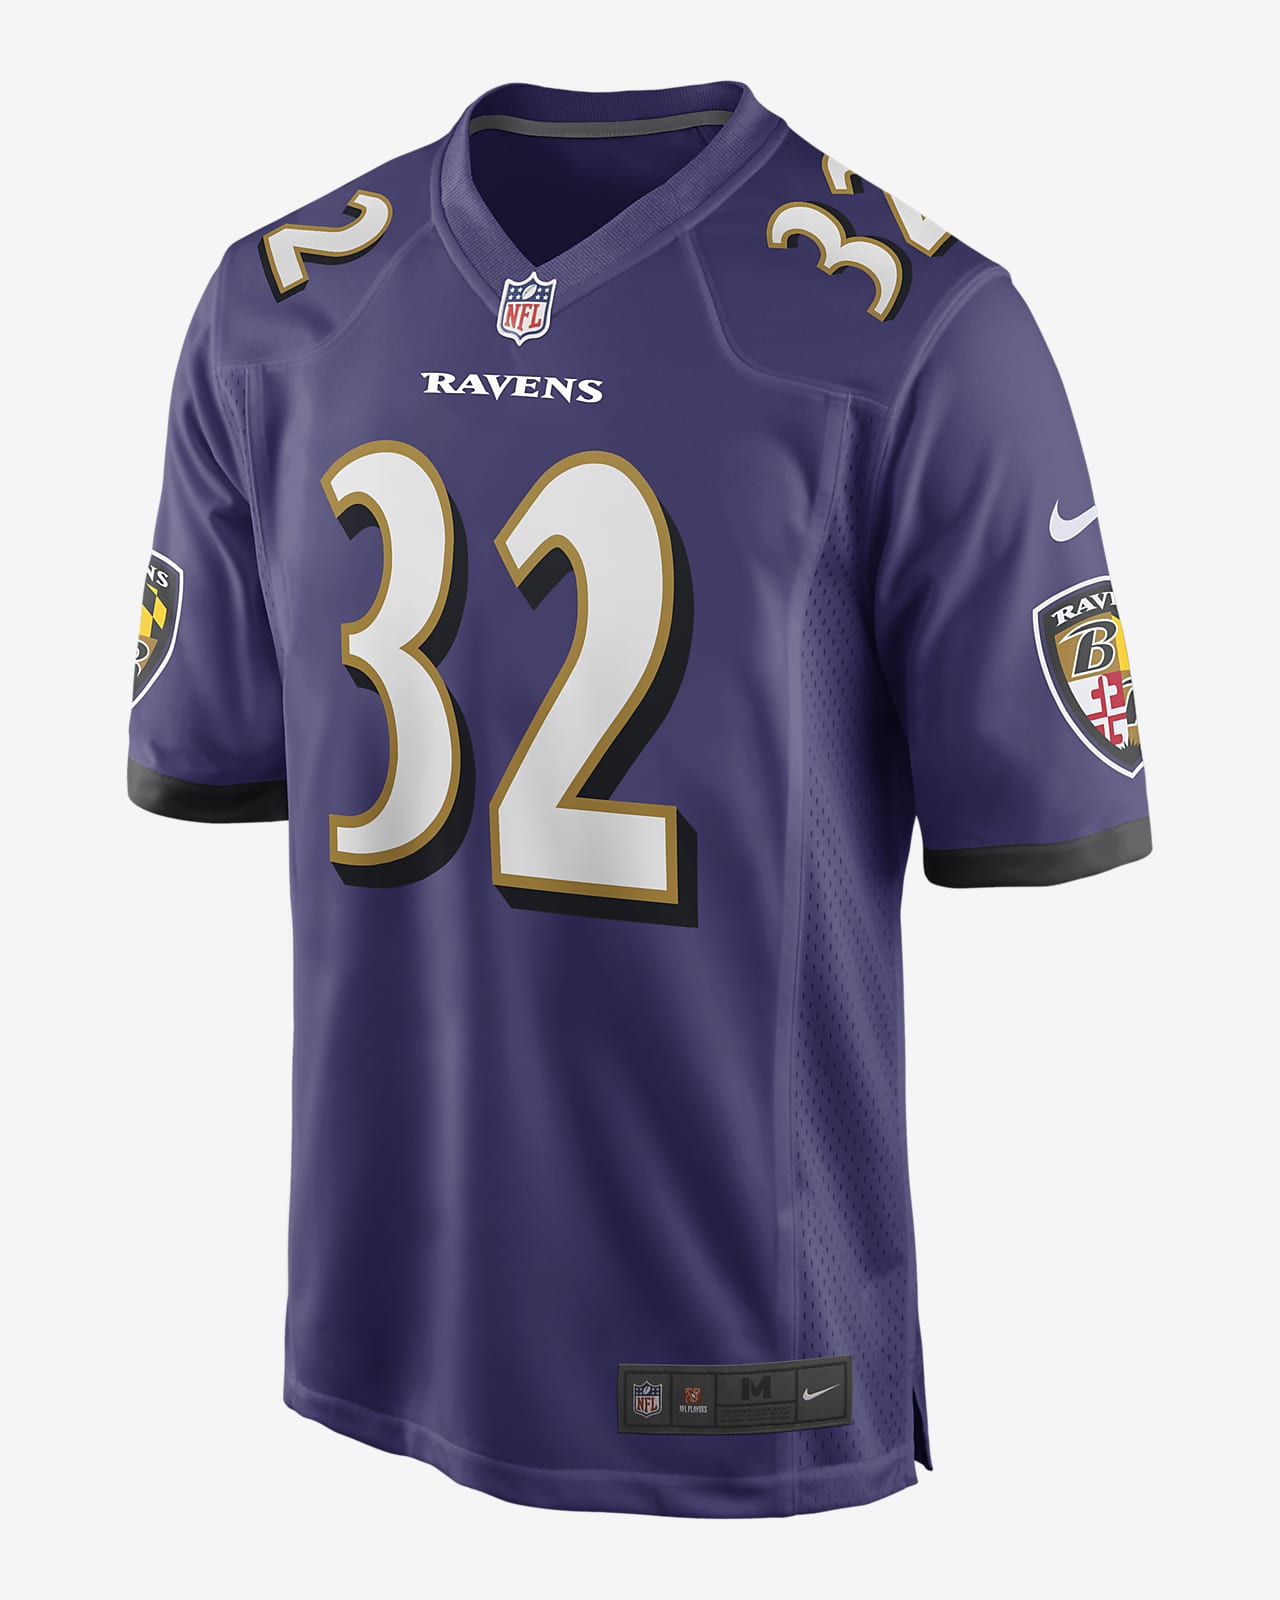 Ravens jersey number